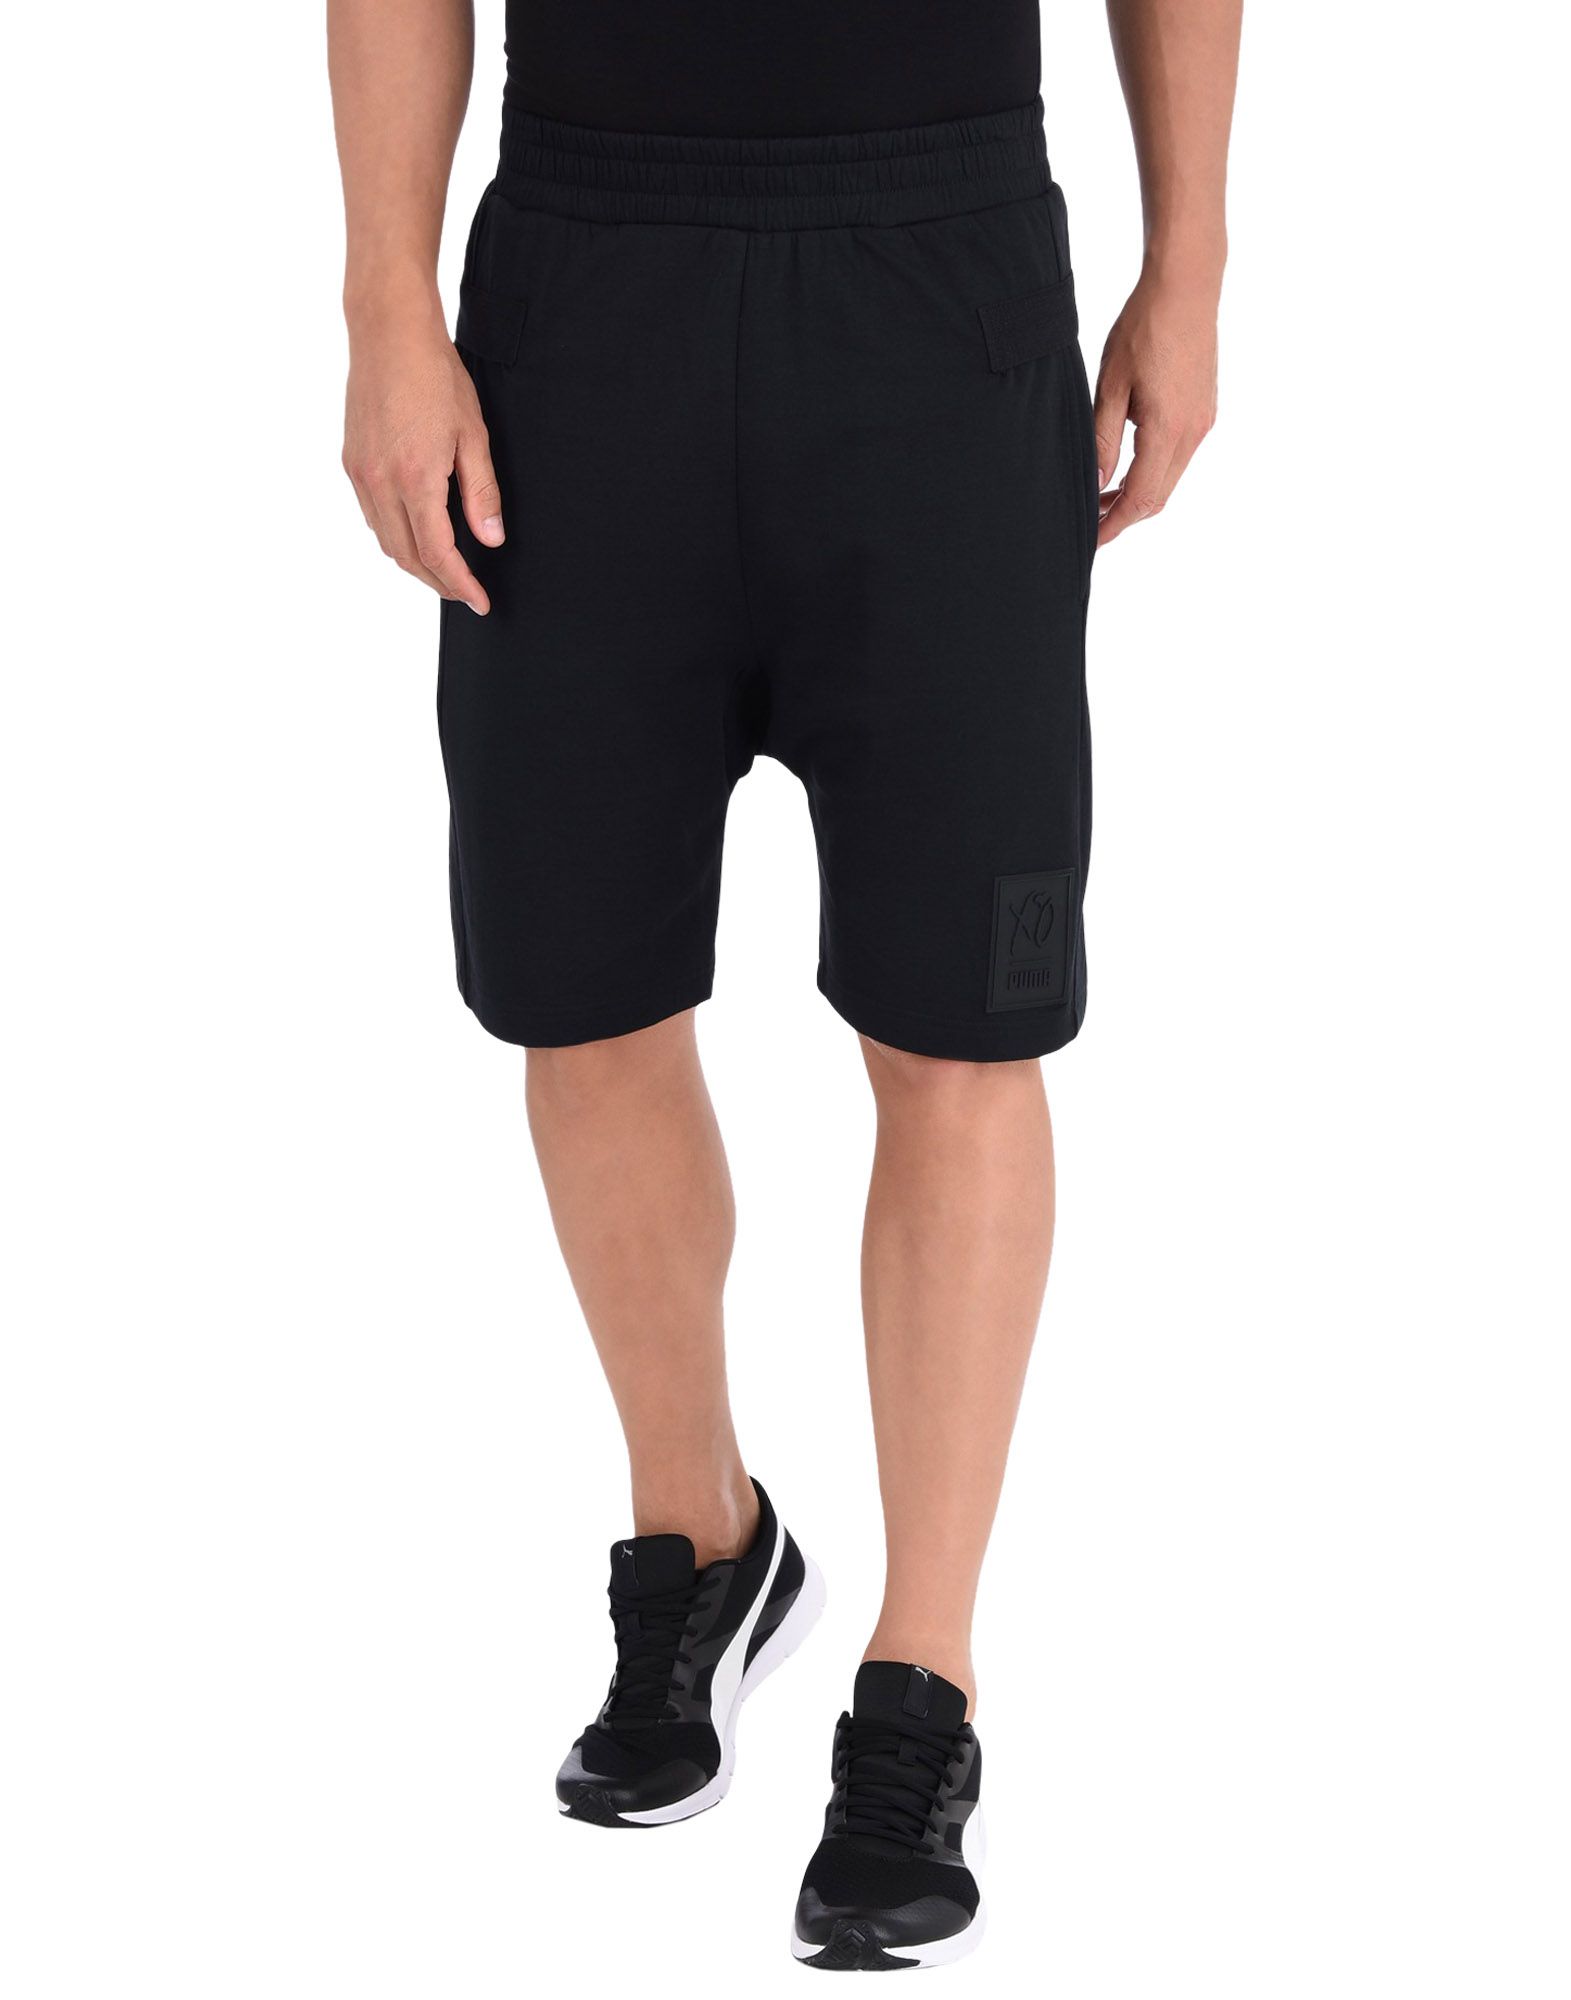 Puma X Xo Shorts - Bermuda Shorts - Men 